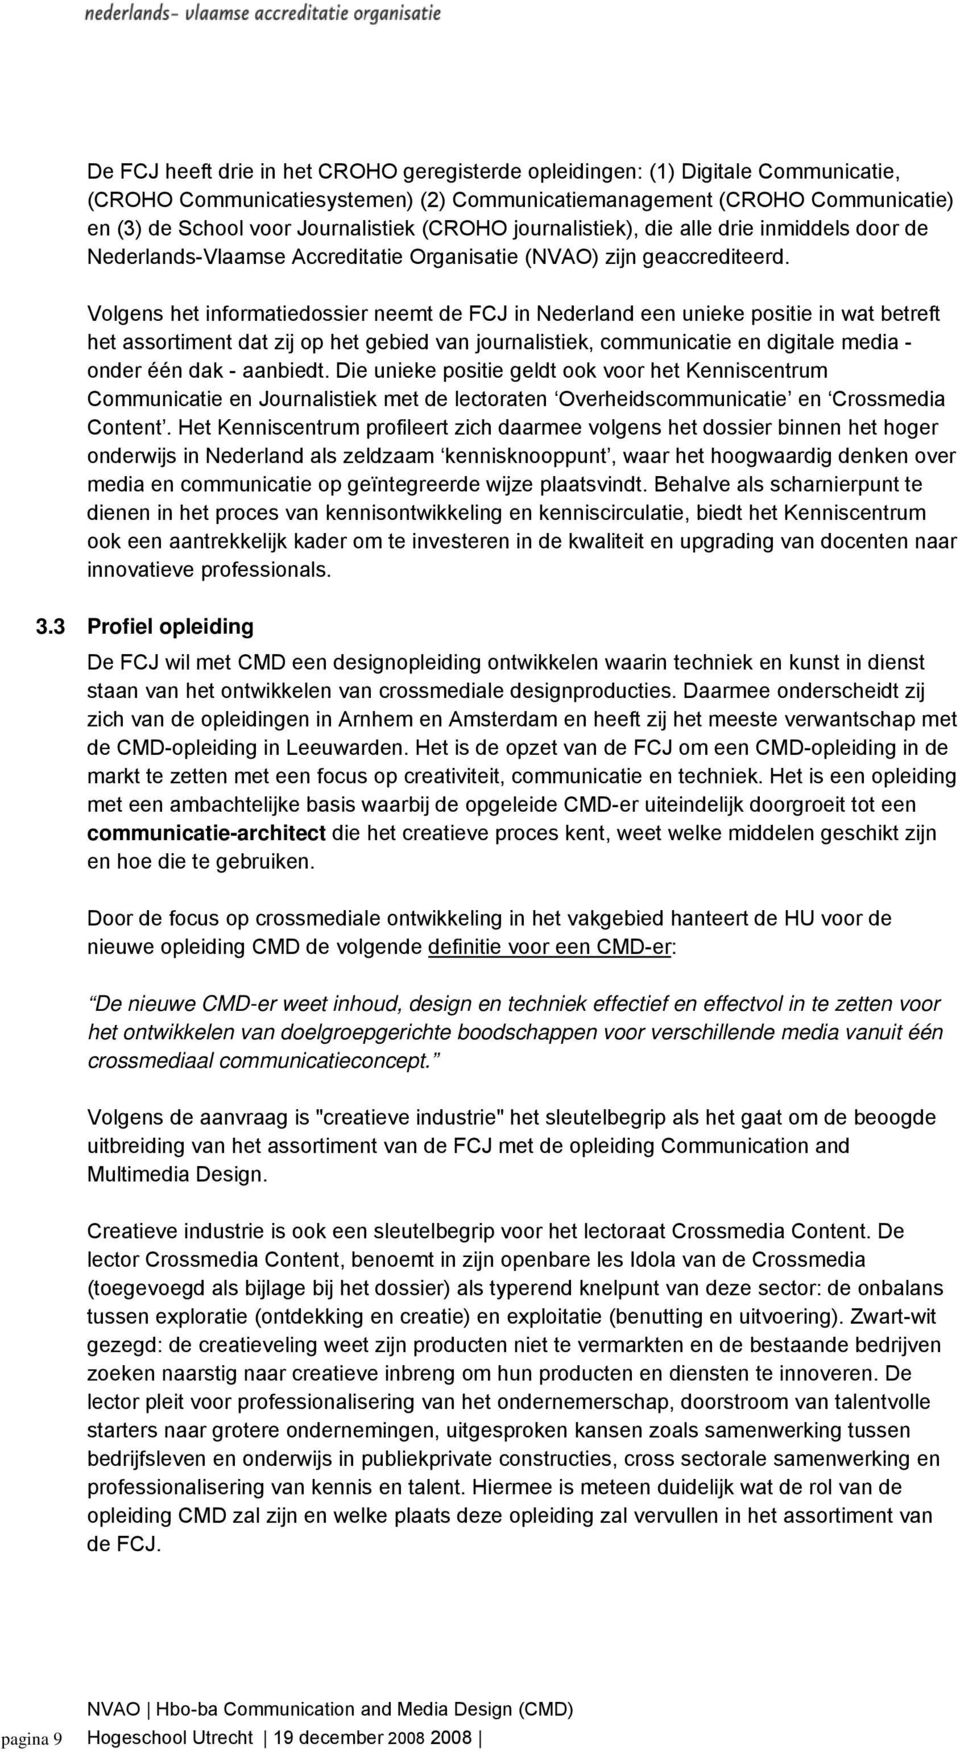 Volgens het informatiedossier neemt de FCJ in Nederland een unieke positie in wat betreft het assortiment dat zij op het gebied van journalistiek, communicatie en digitale media - onder één dak -